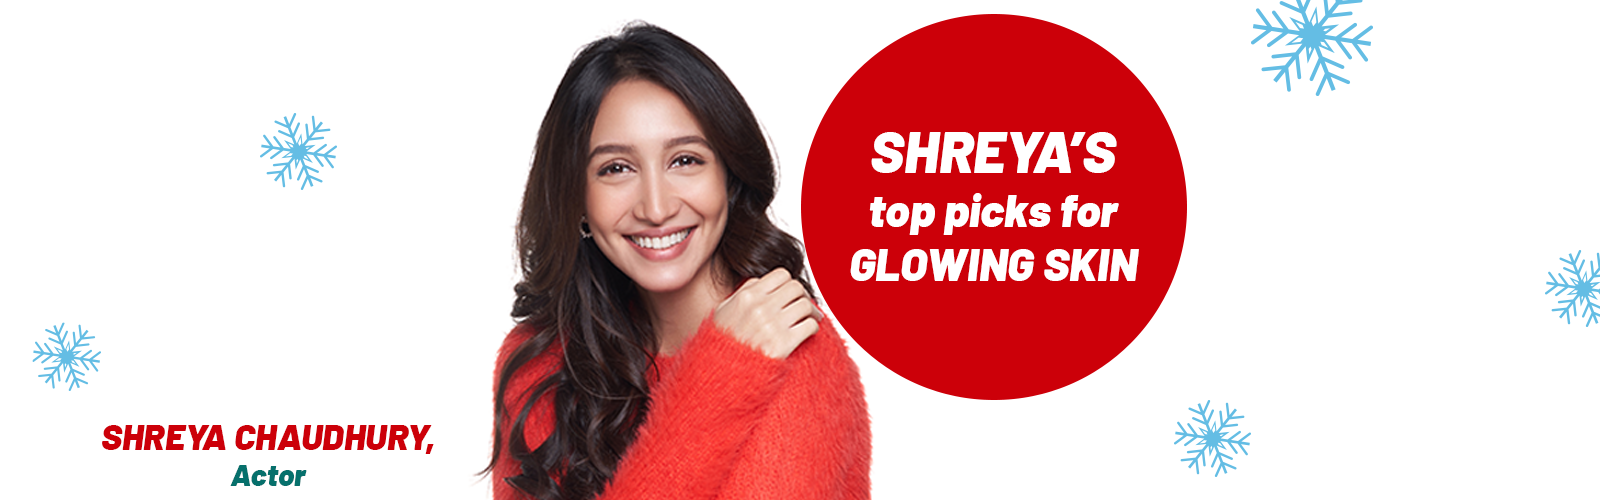 Shreya's Top Picks